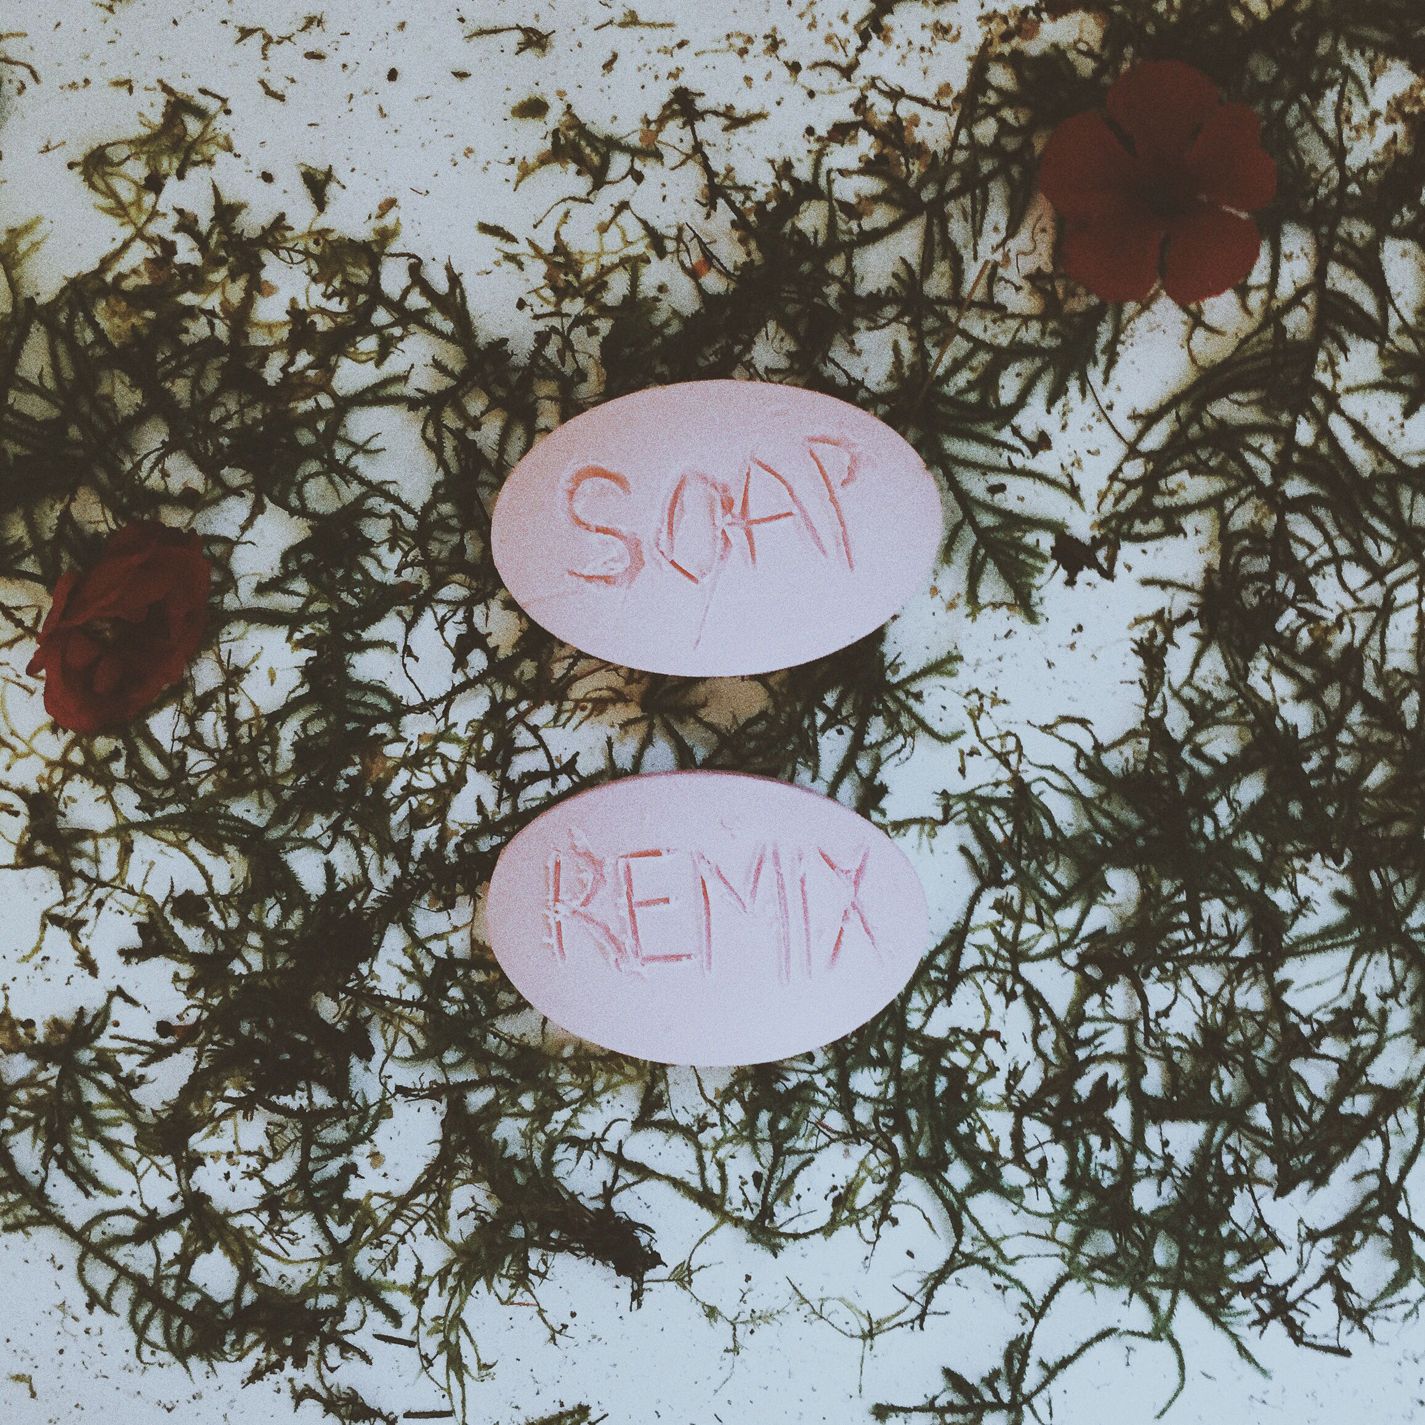 Soap (Steve James Remix)